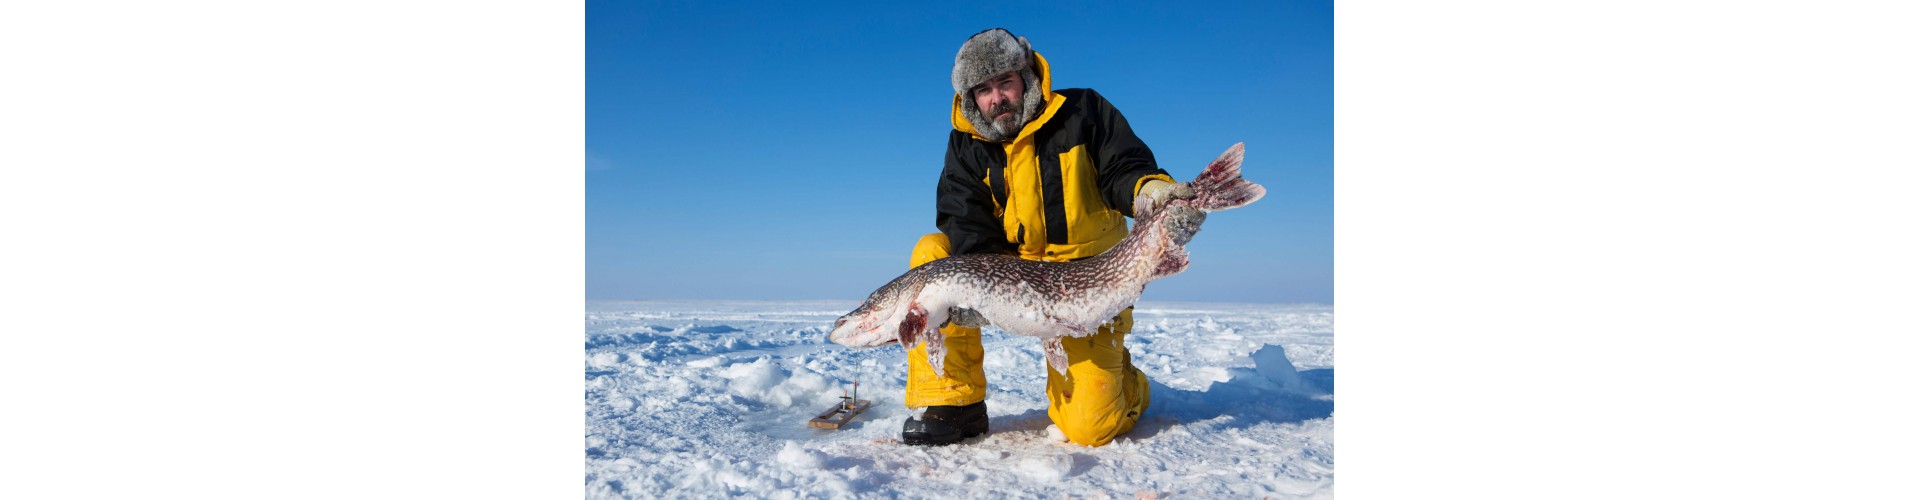 Тепло и функциональность: Оценка технологий в зимней рыболовной одежде